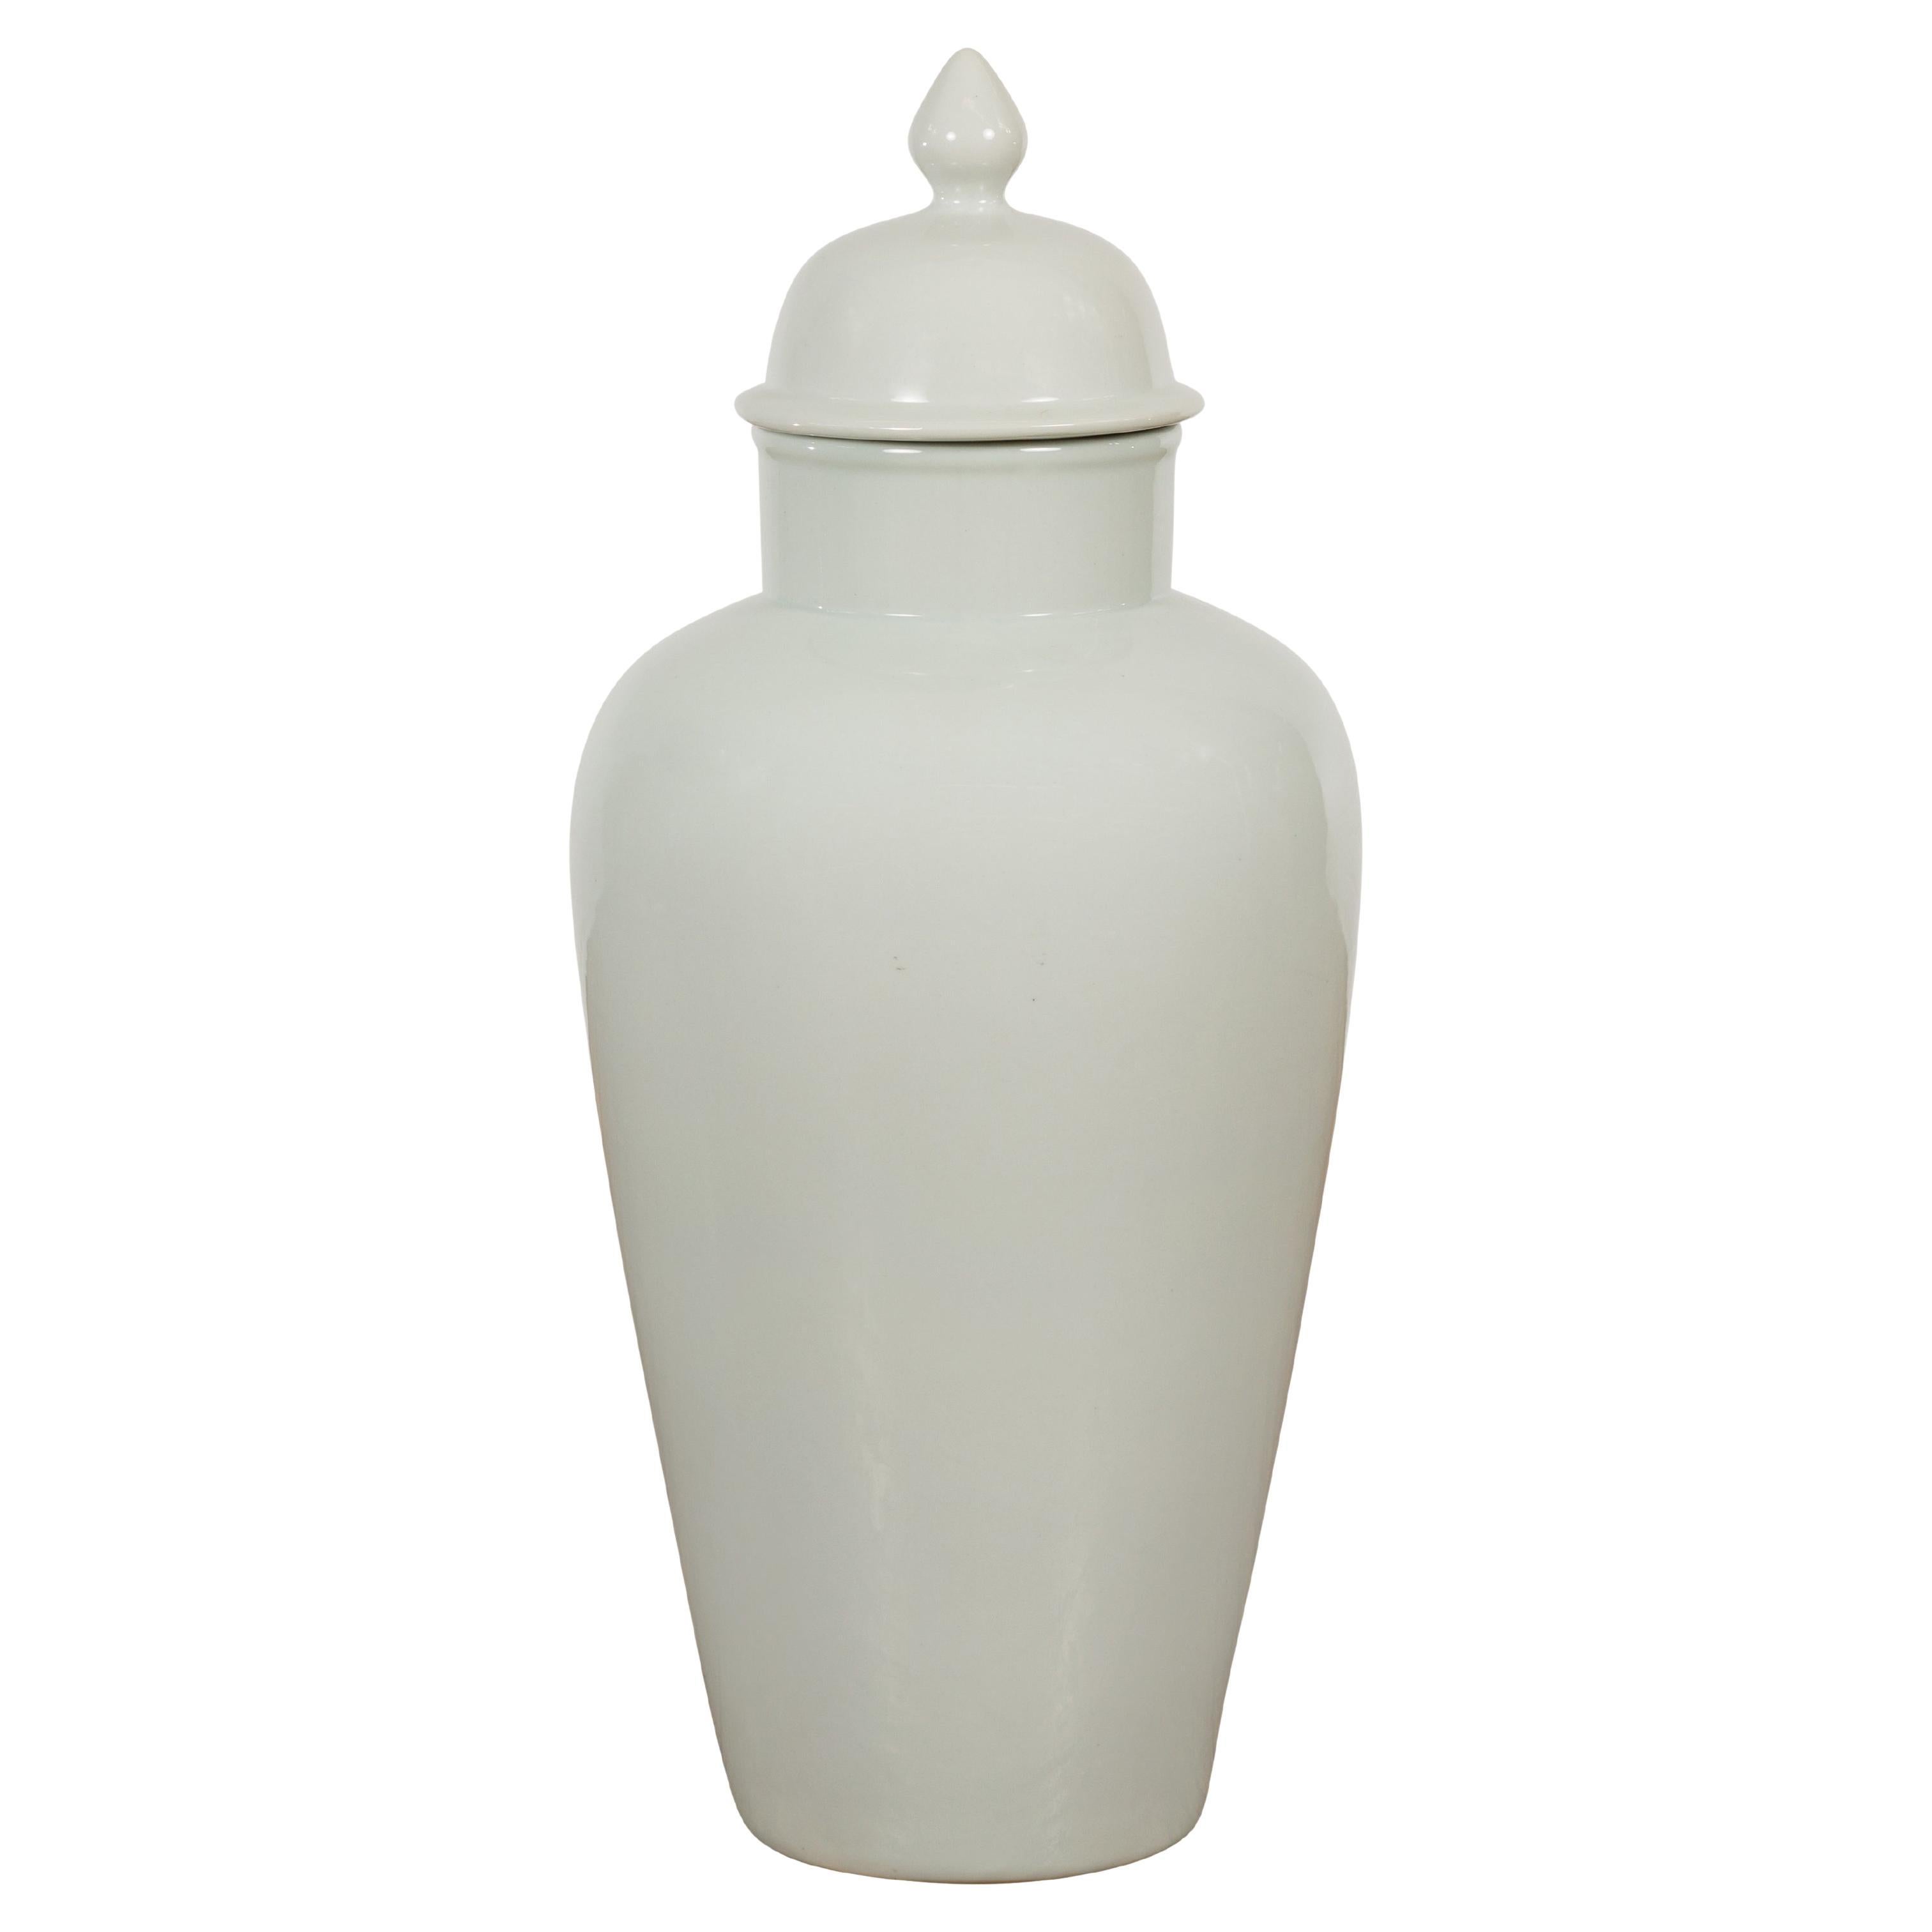 White Porcelain Vintage Vase with Lid